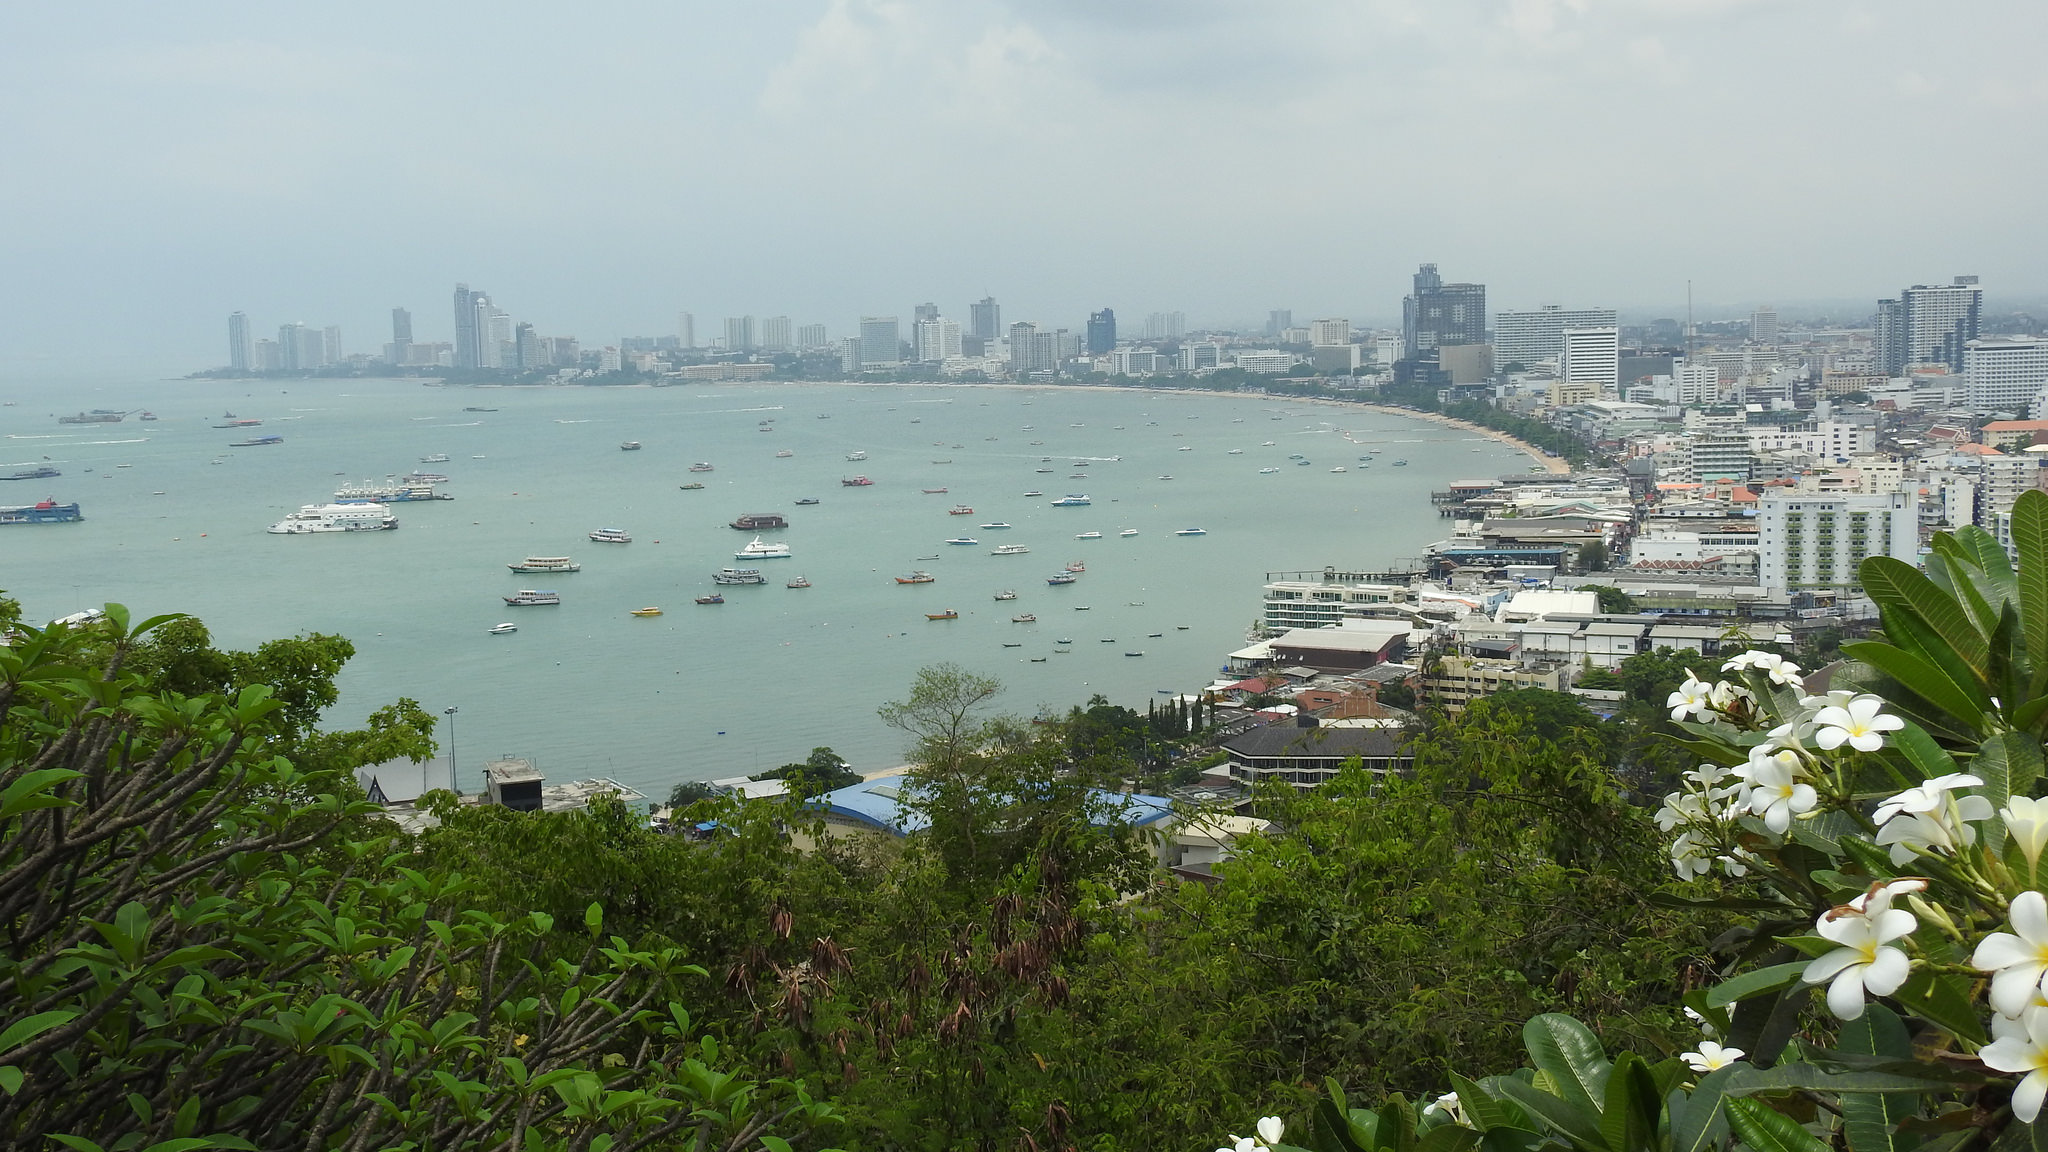 Les hôteliers de Pattaya ont fait part de leurs inquiétudes face à la baisse des arrivées de touristes chinois dans la ville